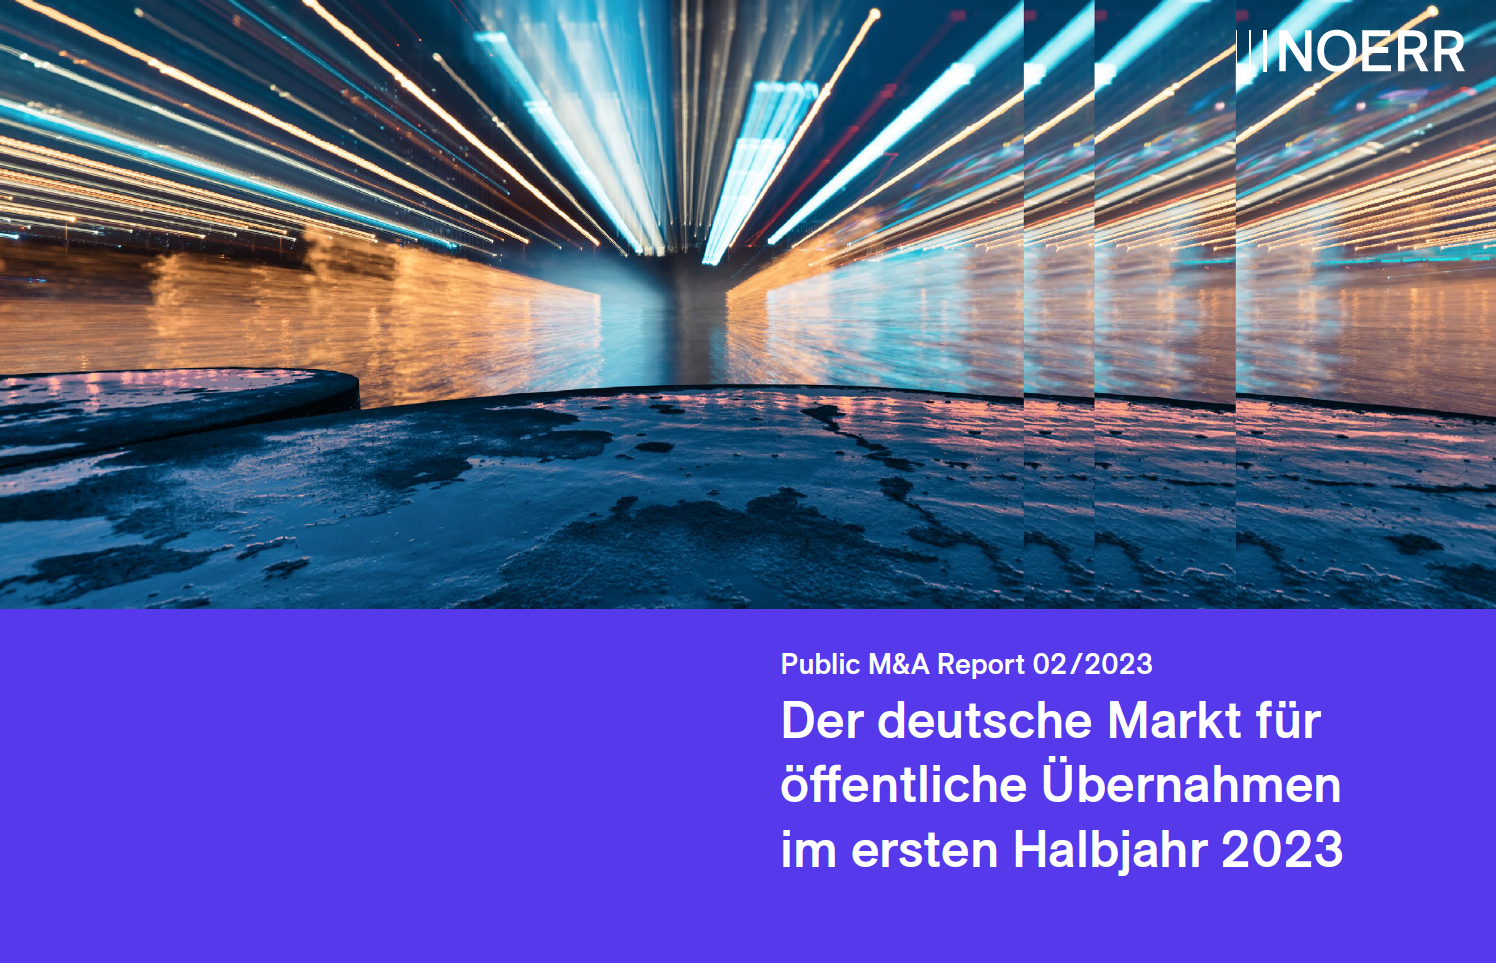 Titelbild Public M&A Report 2/2023 deutsch